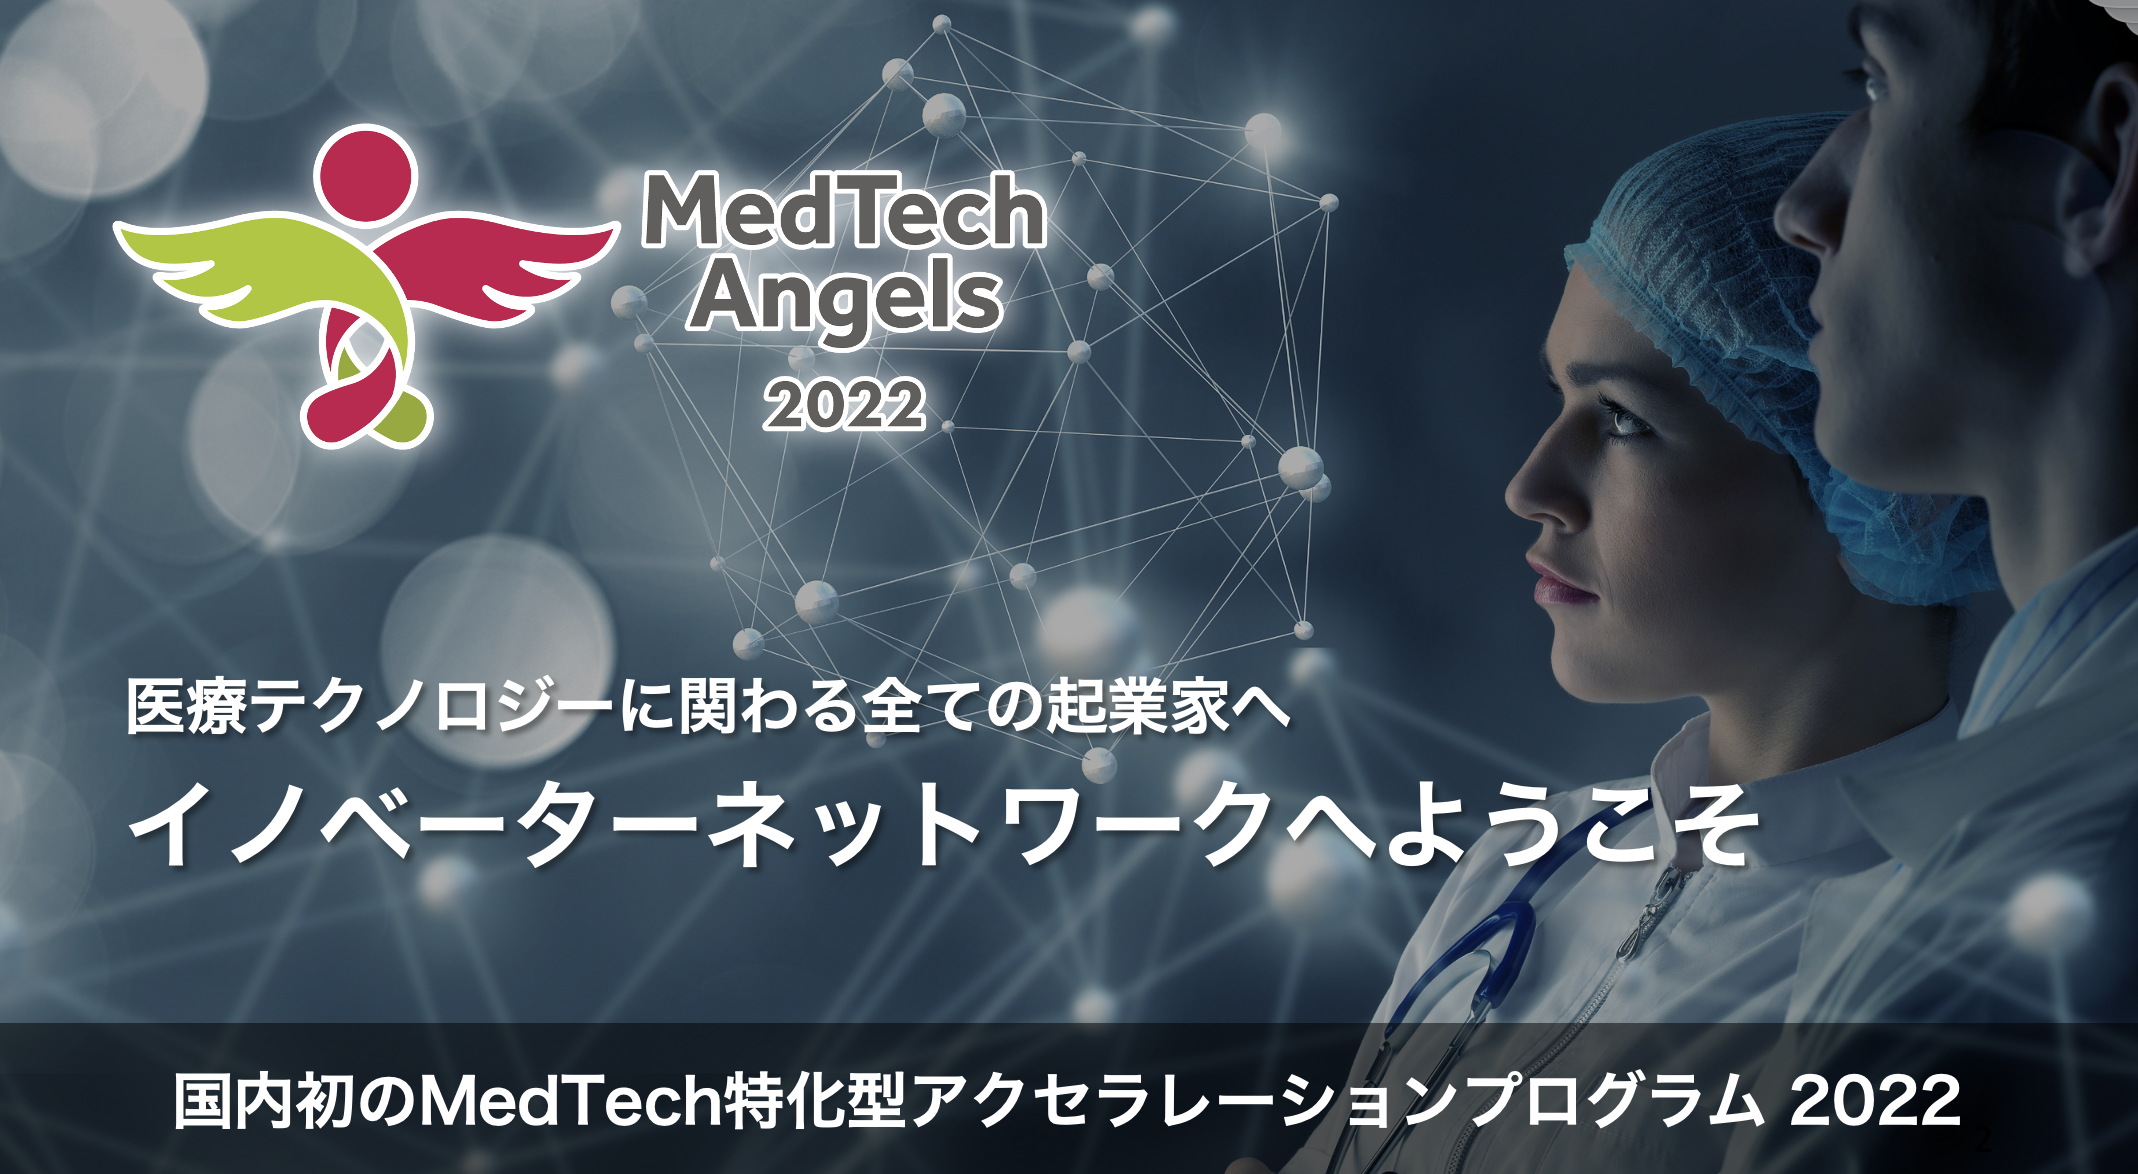 オンライン説明会「MedTech Angels 2022」第二回 医療機器特化型アクセラレータープログラム